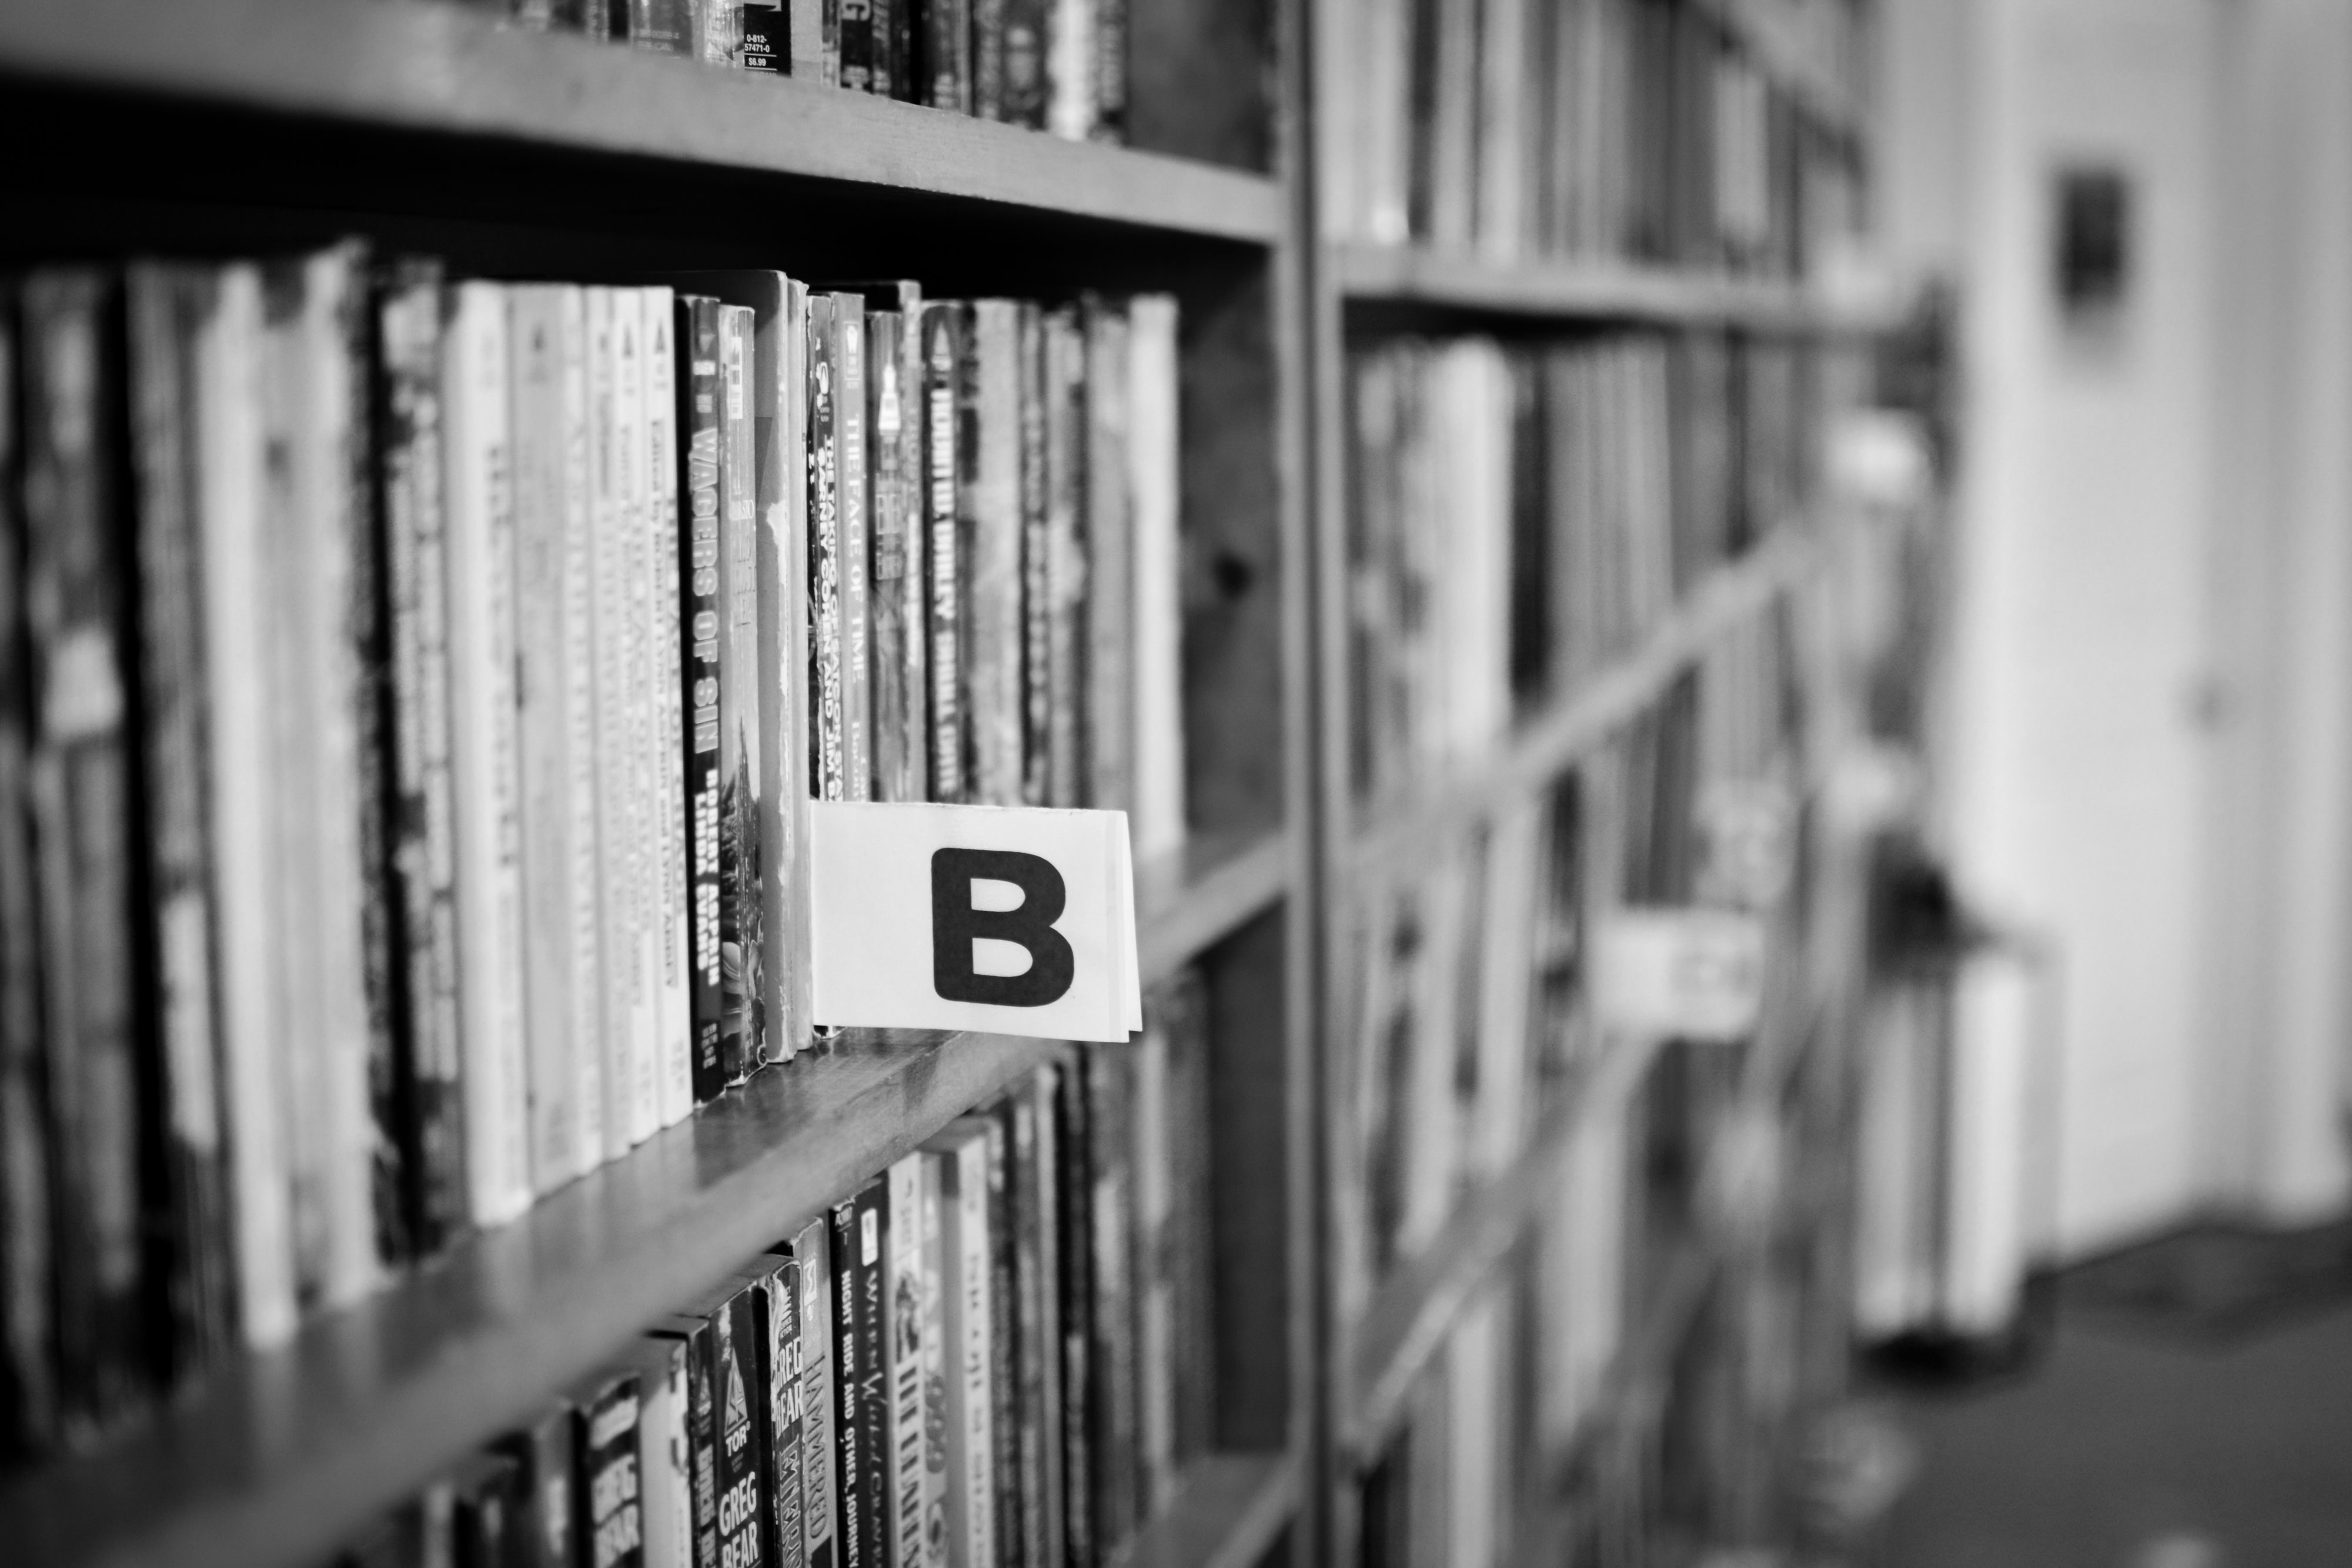 greyscale photo of b note in bookshelf